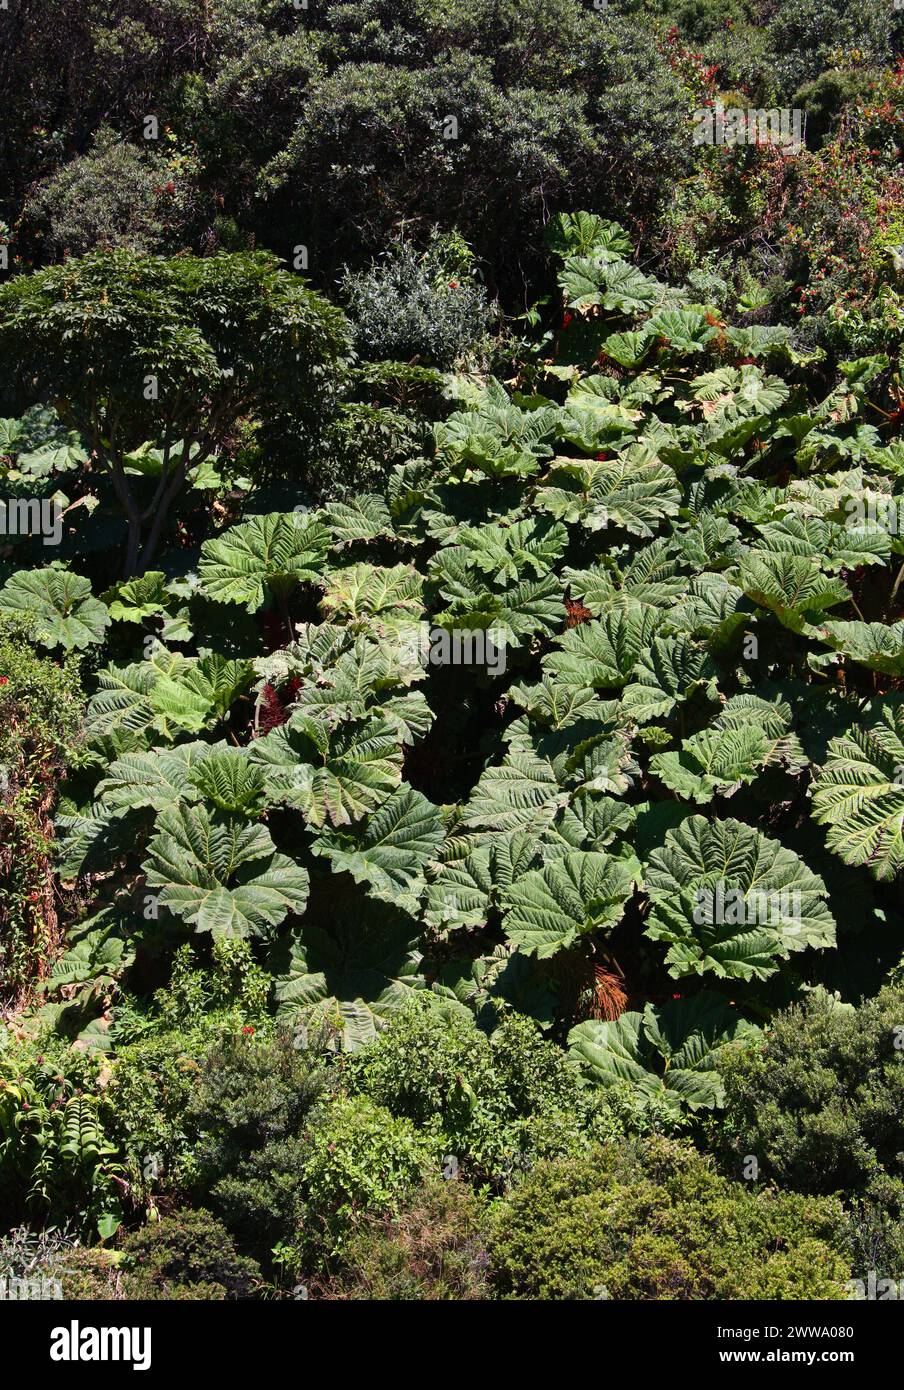 Poor man’s Umbrella, Gunnera insignis, Gunneraceae im Irazú Vulcano National Park, Costa Rica. Wächst auf 000 Fuß. Stockfoto